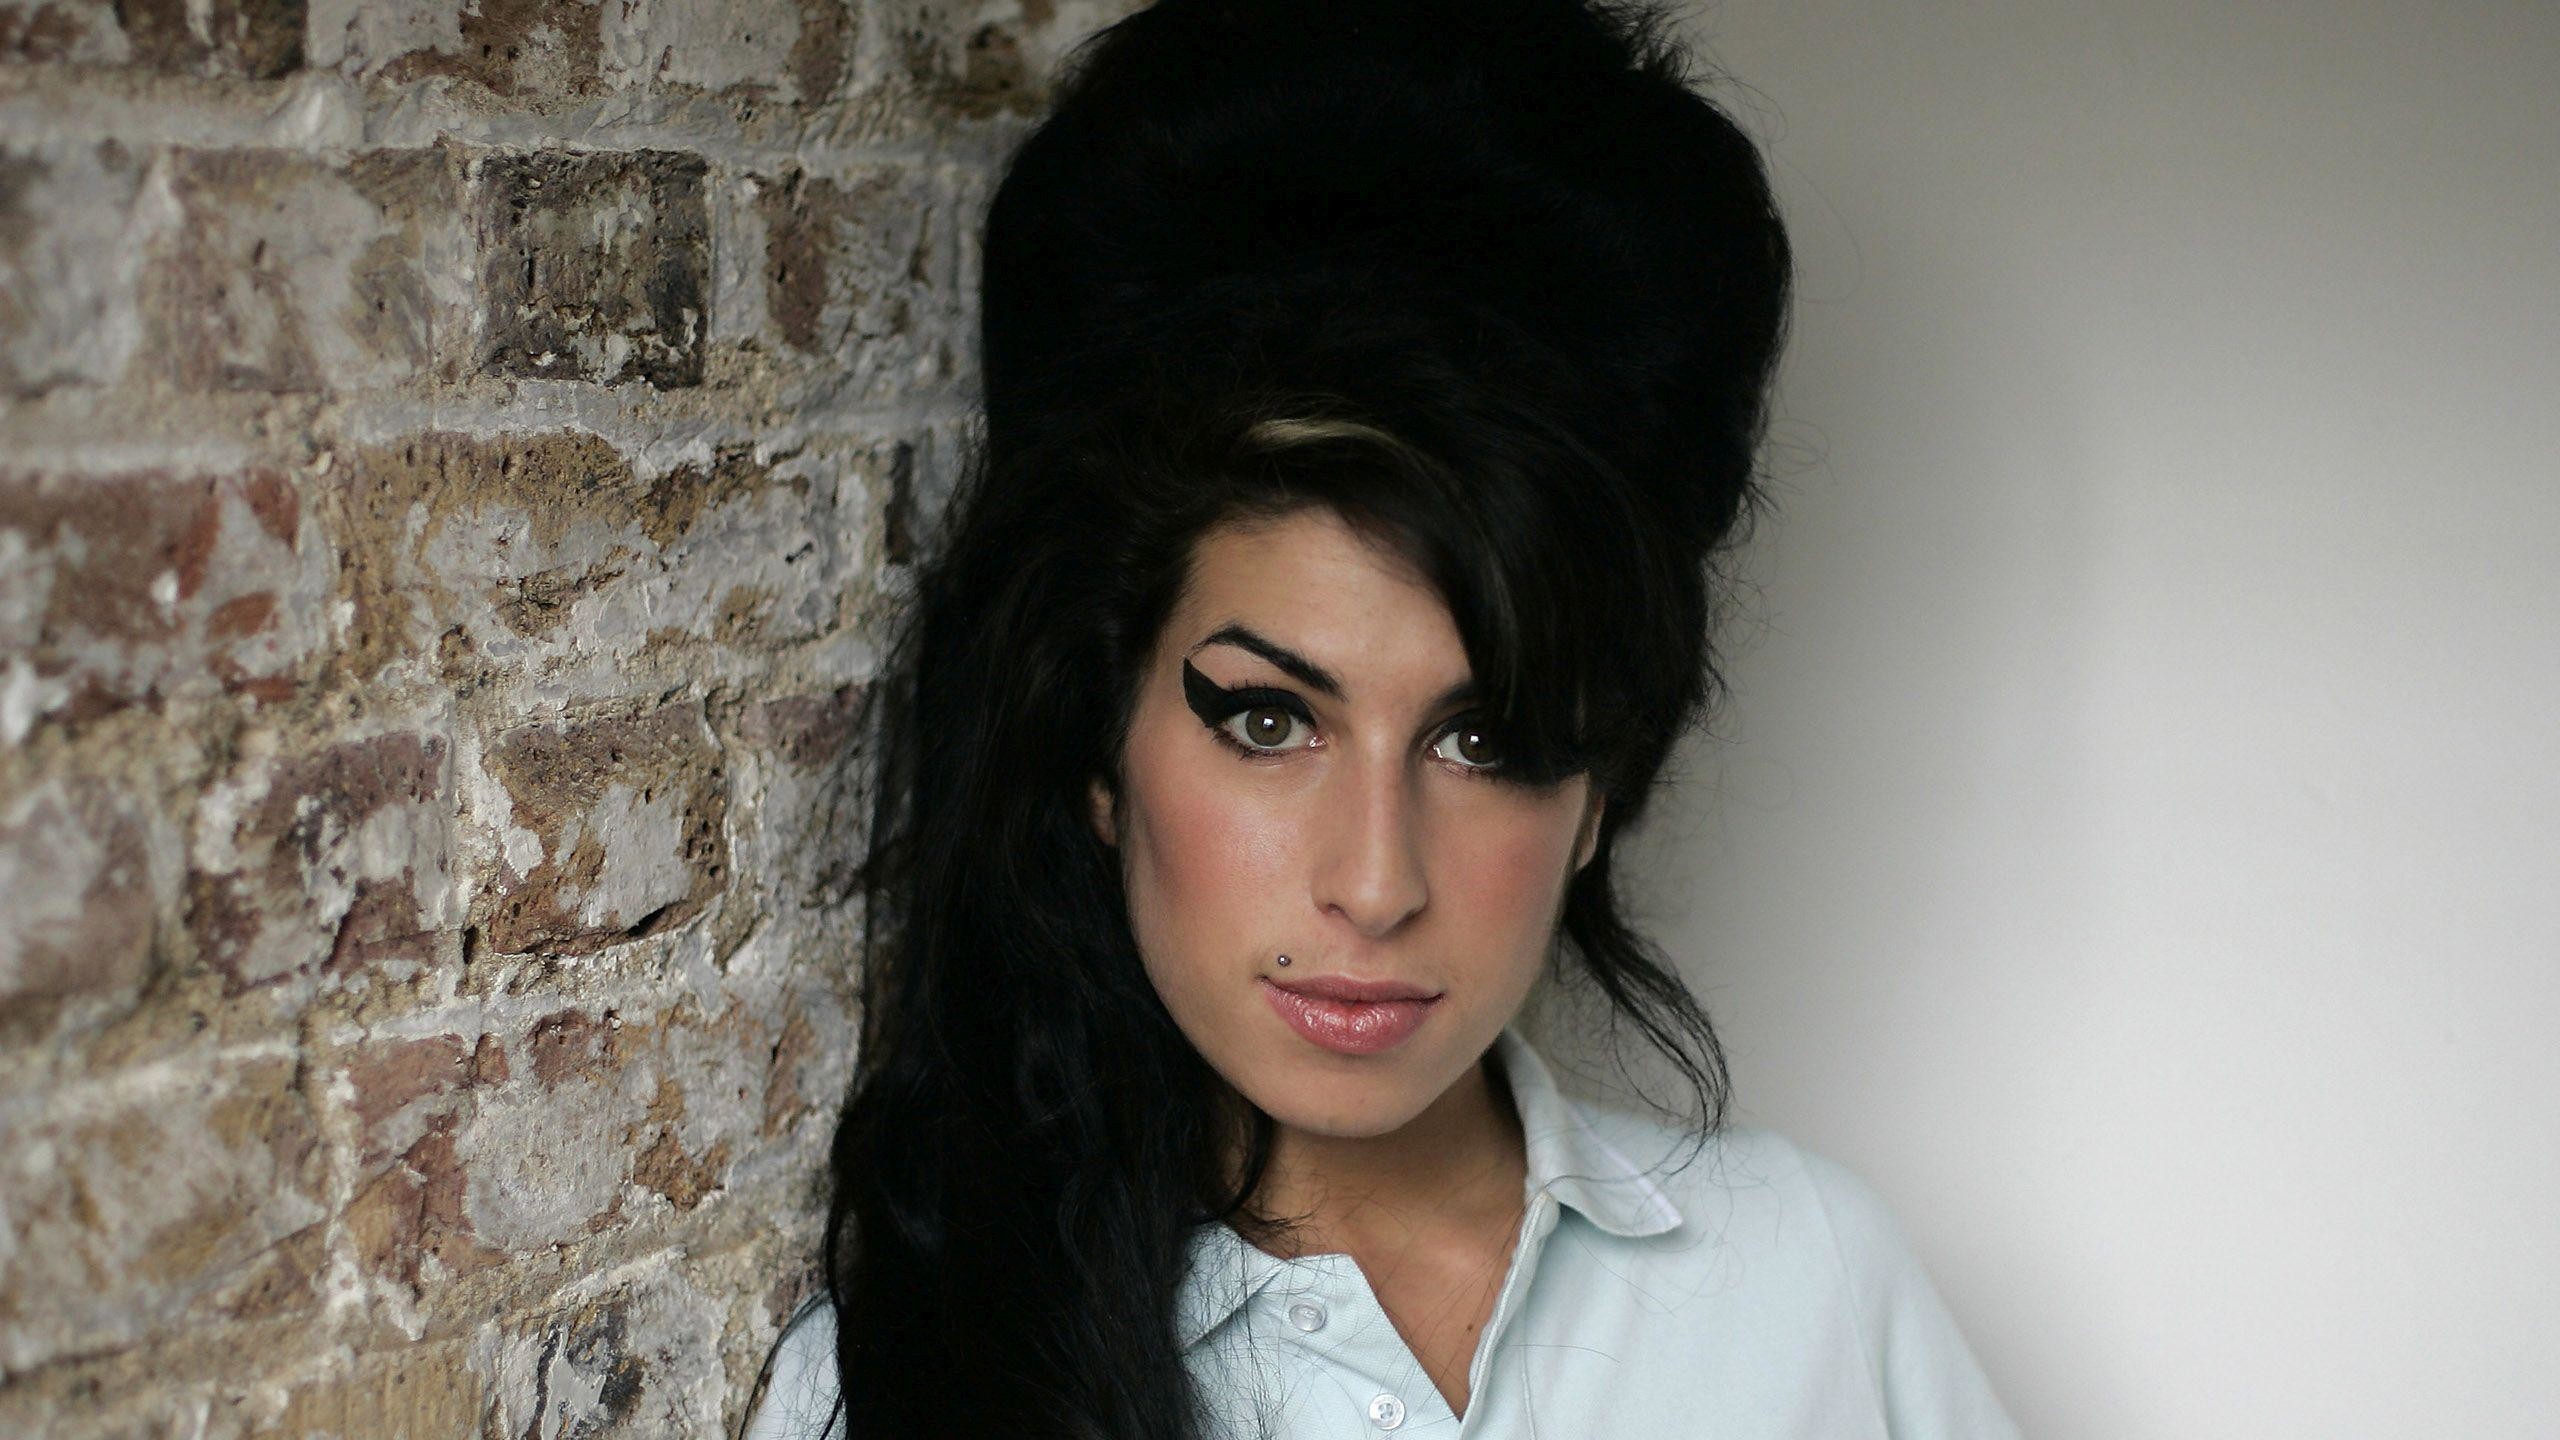 2560x1440 HD Amy Winehouse at the brick wall Wallpaper